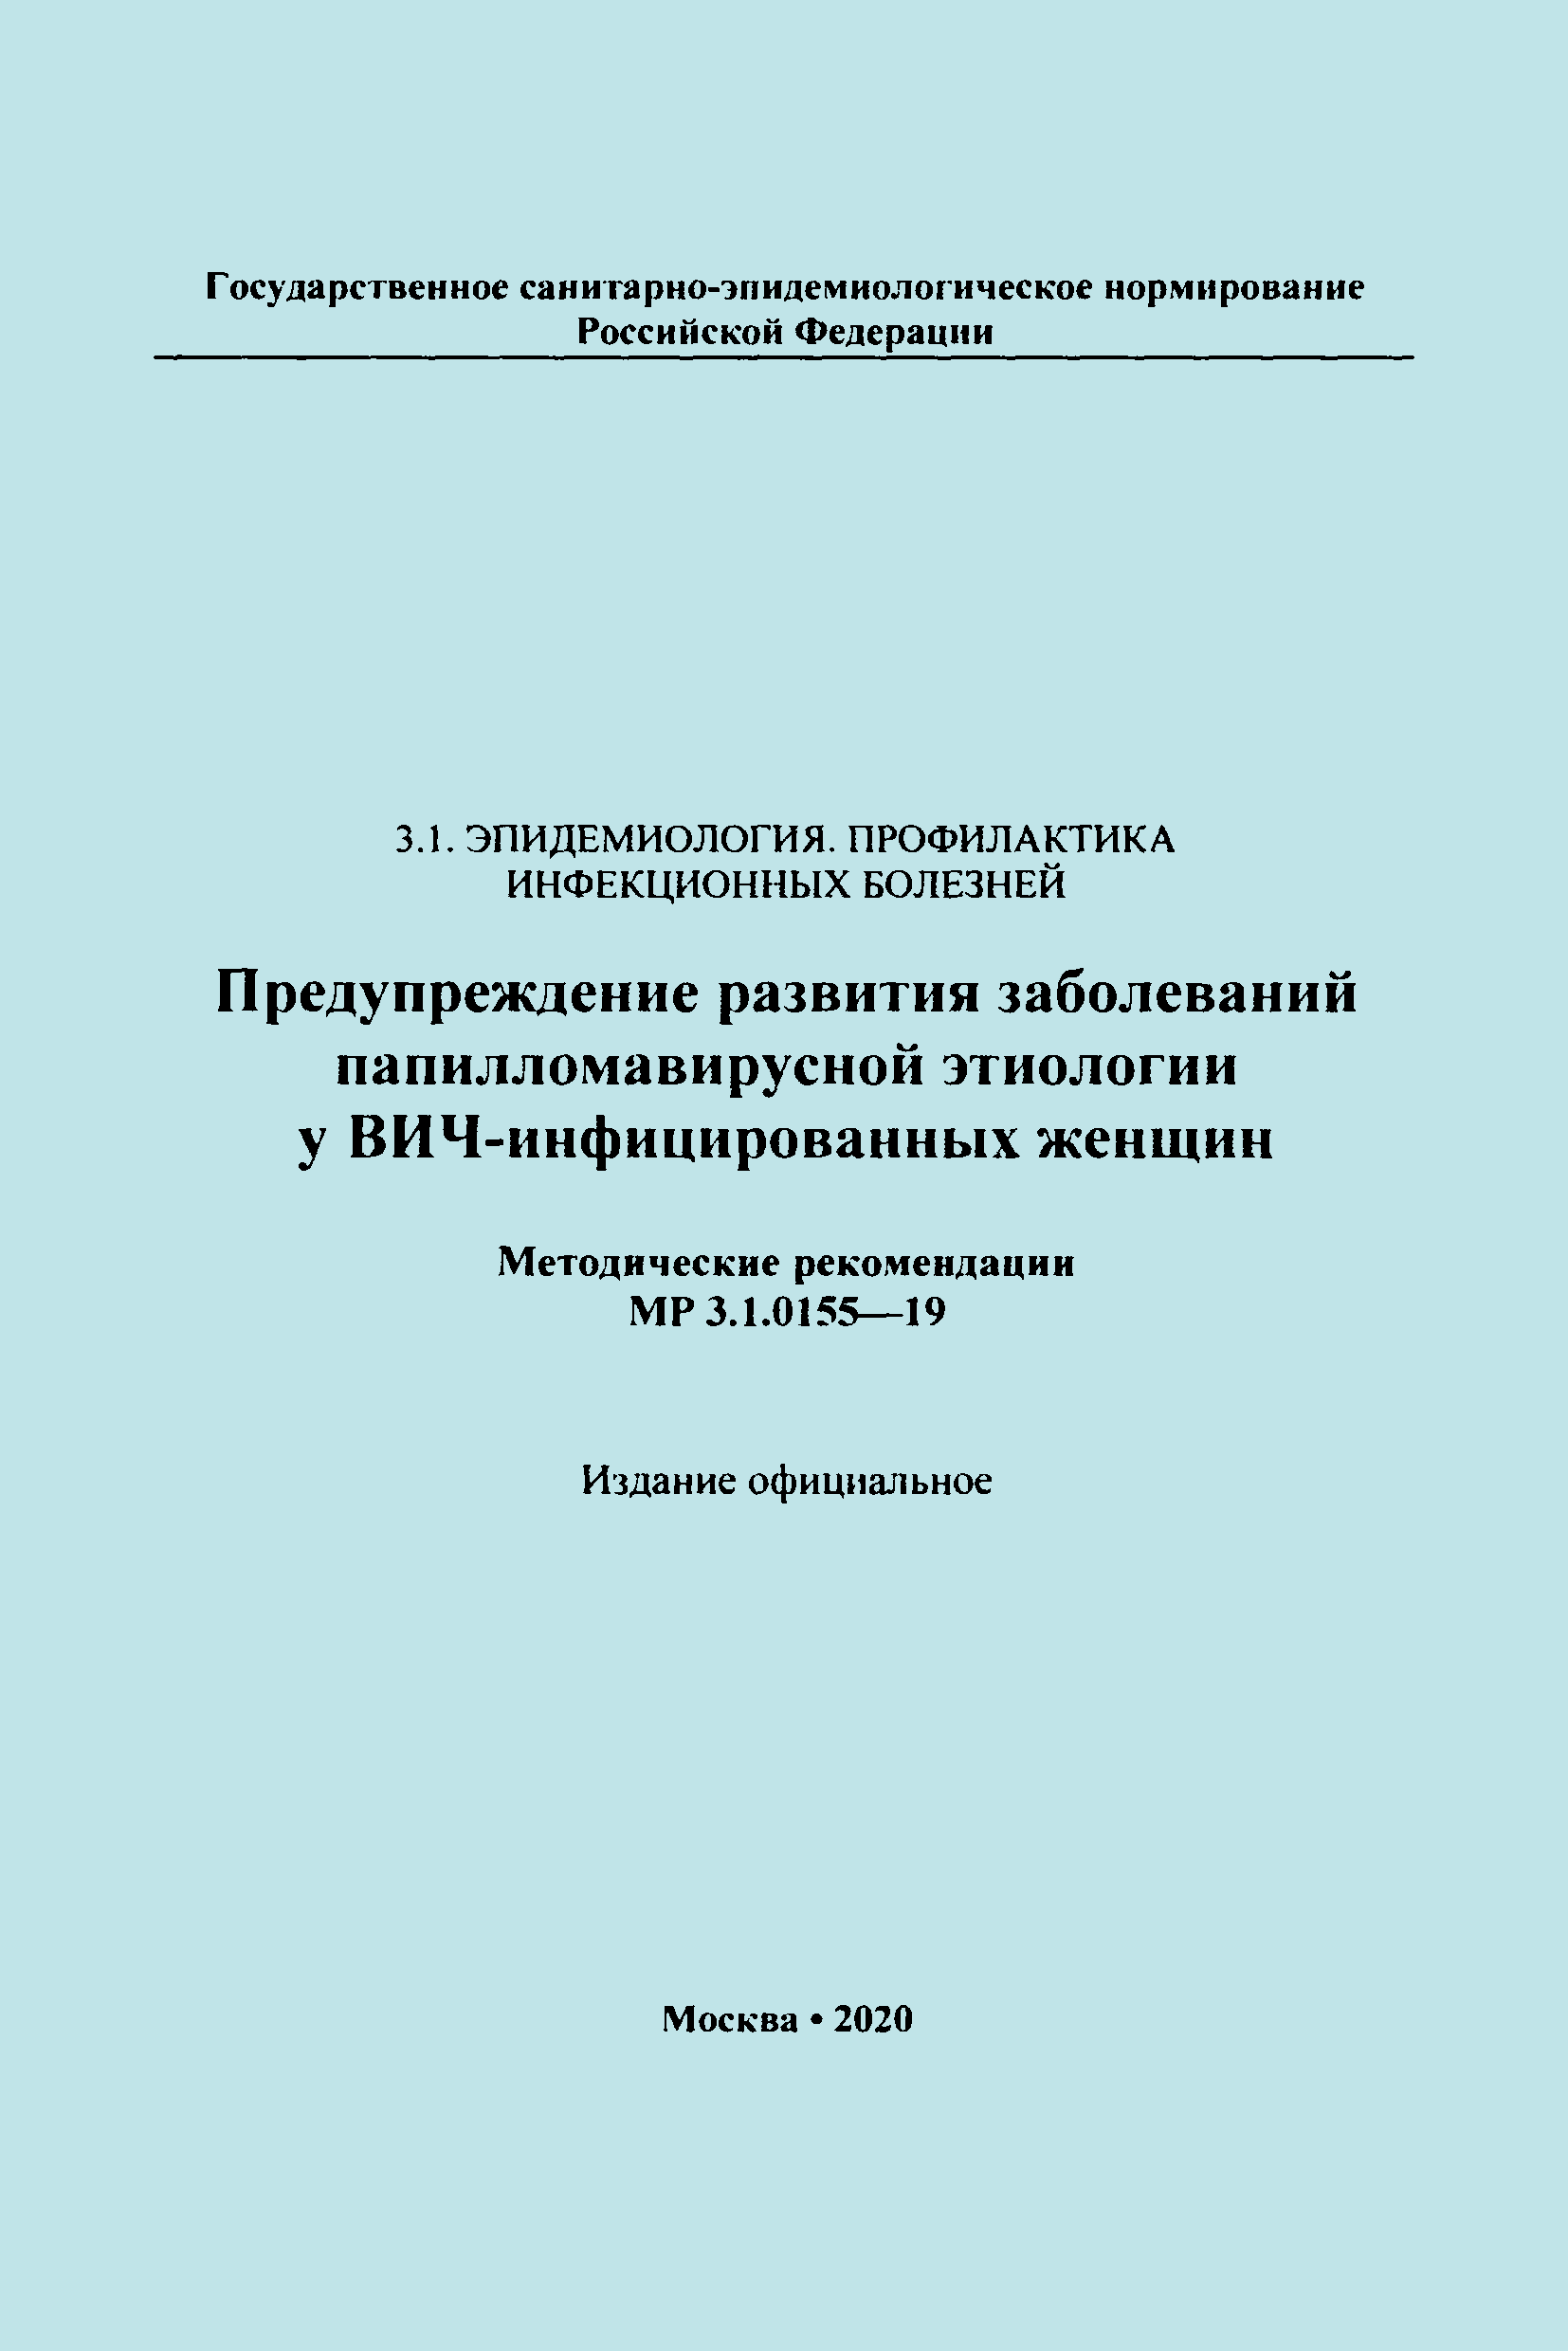 МР 3.1.0155-19